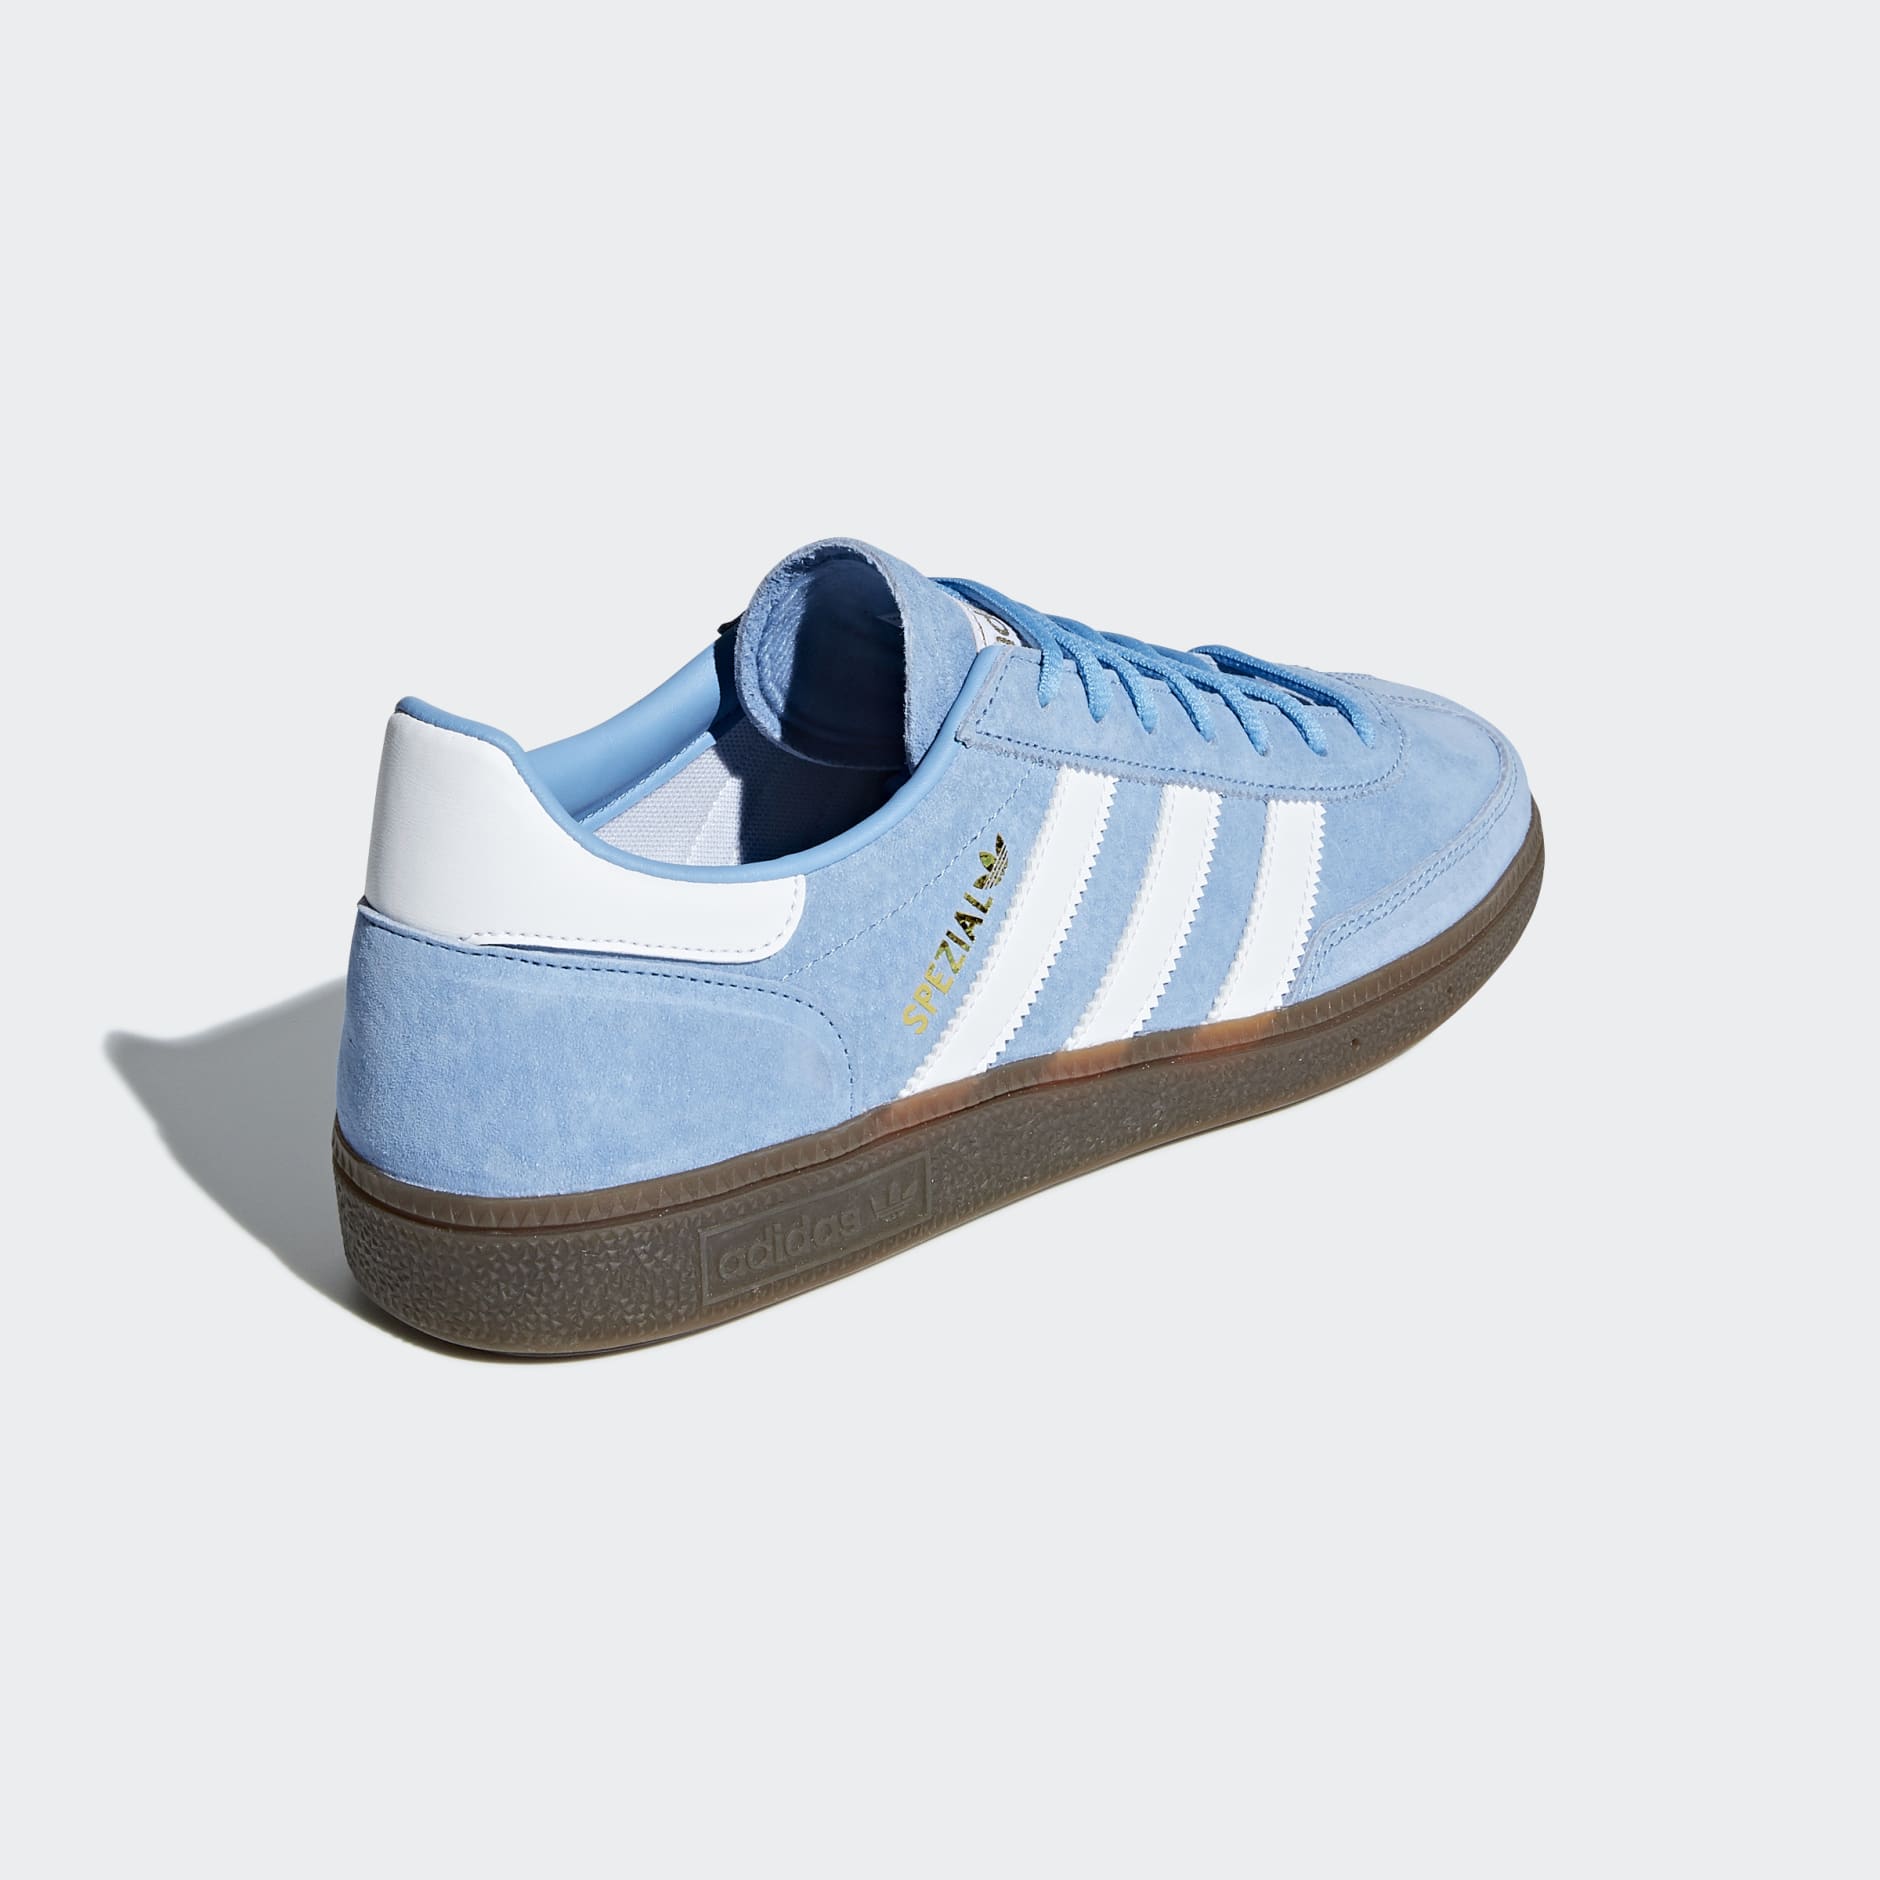 Men's Shoes - Handball Spezial Shoes - Blue